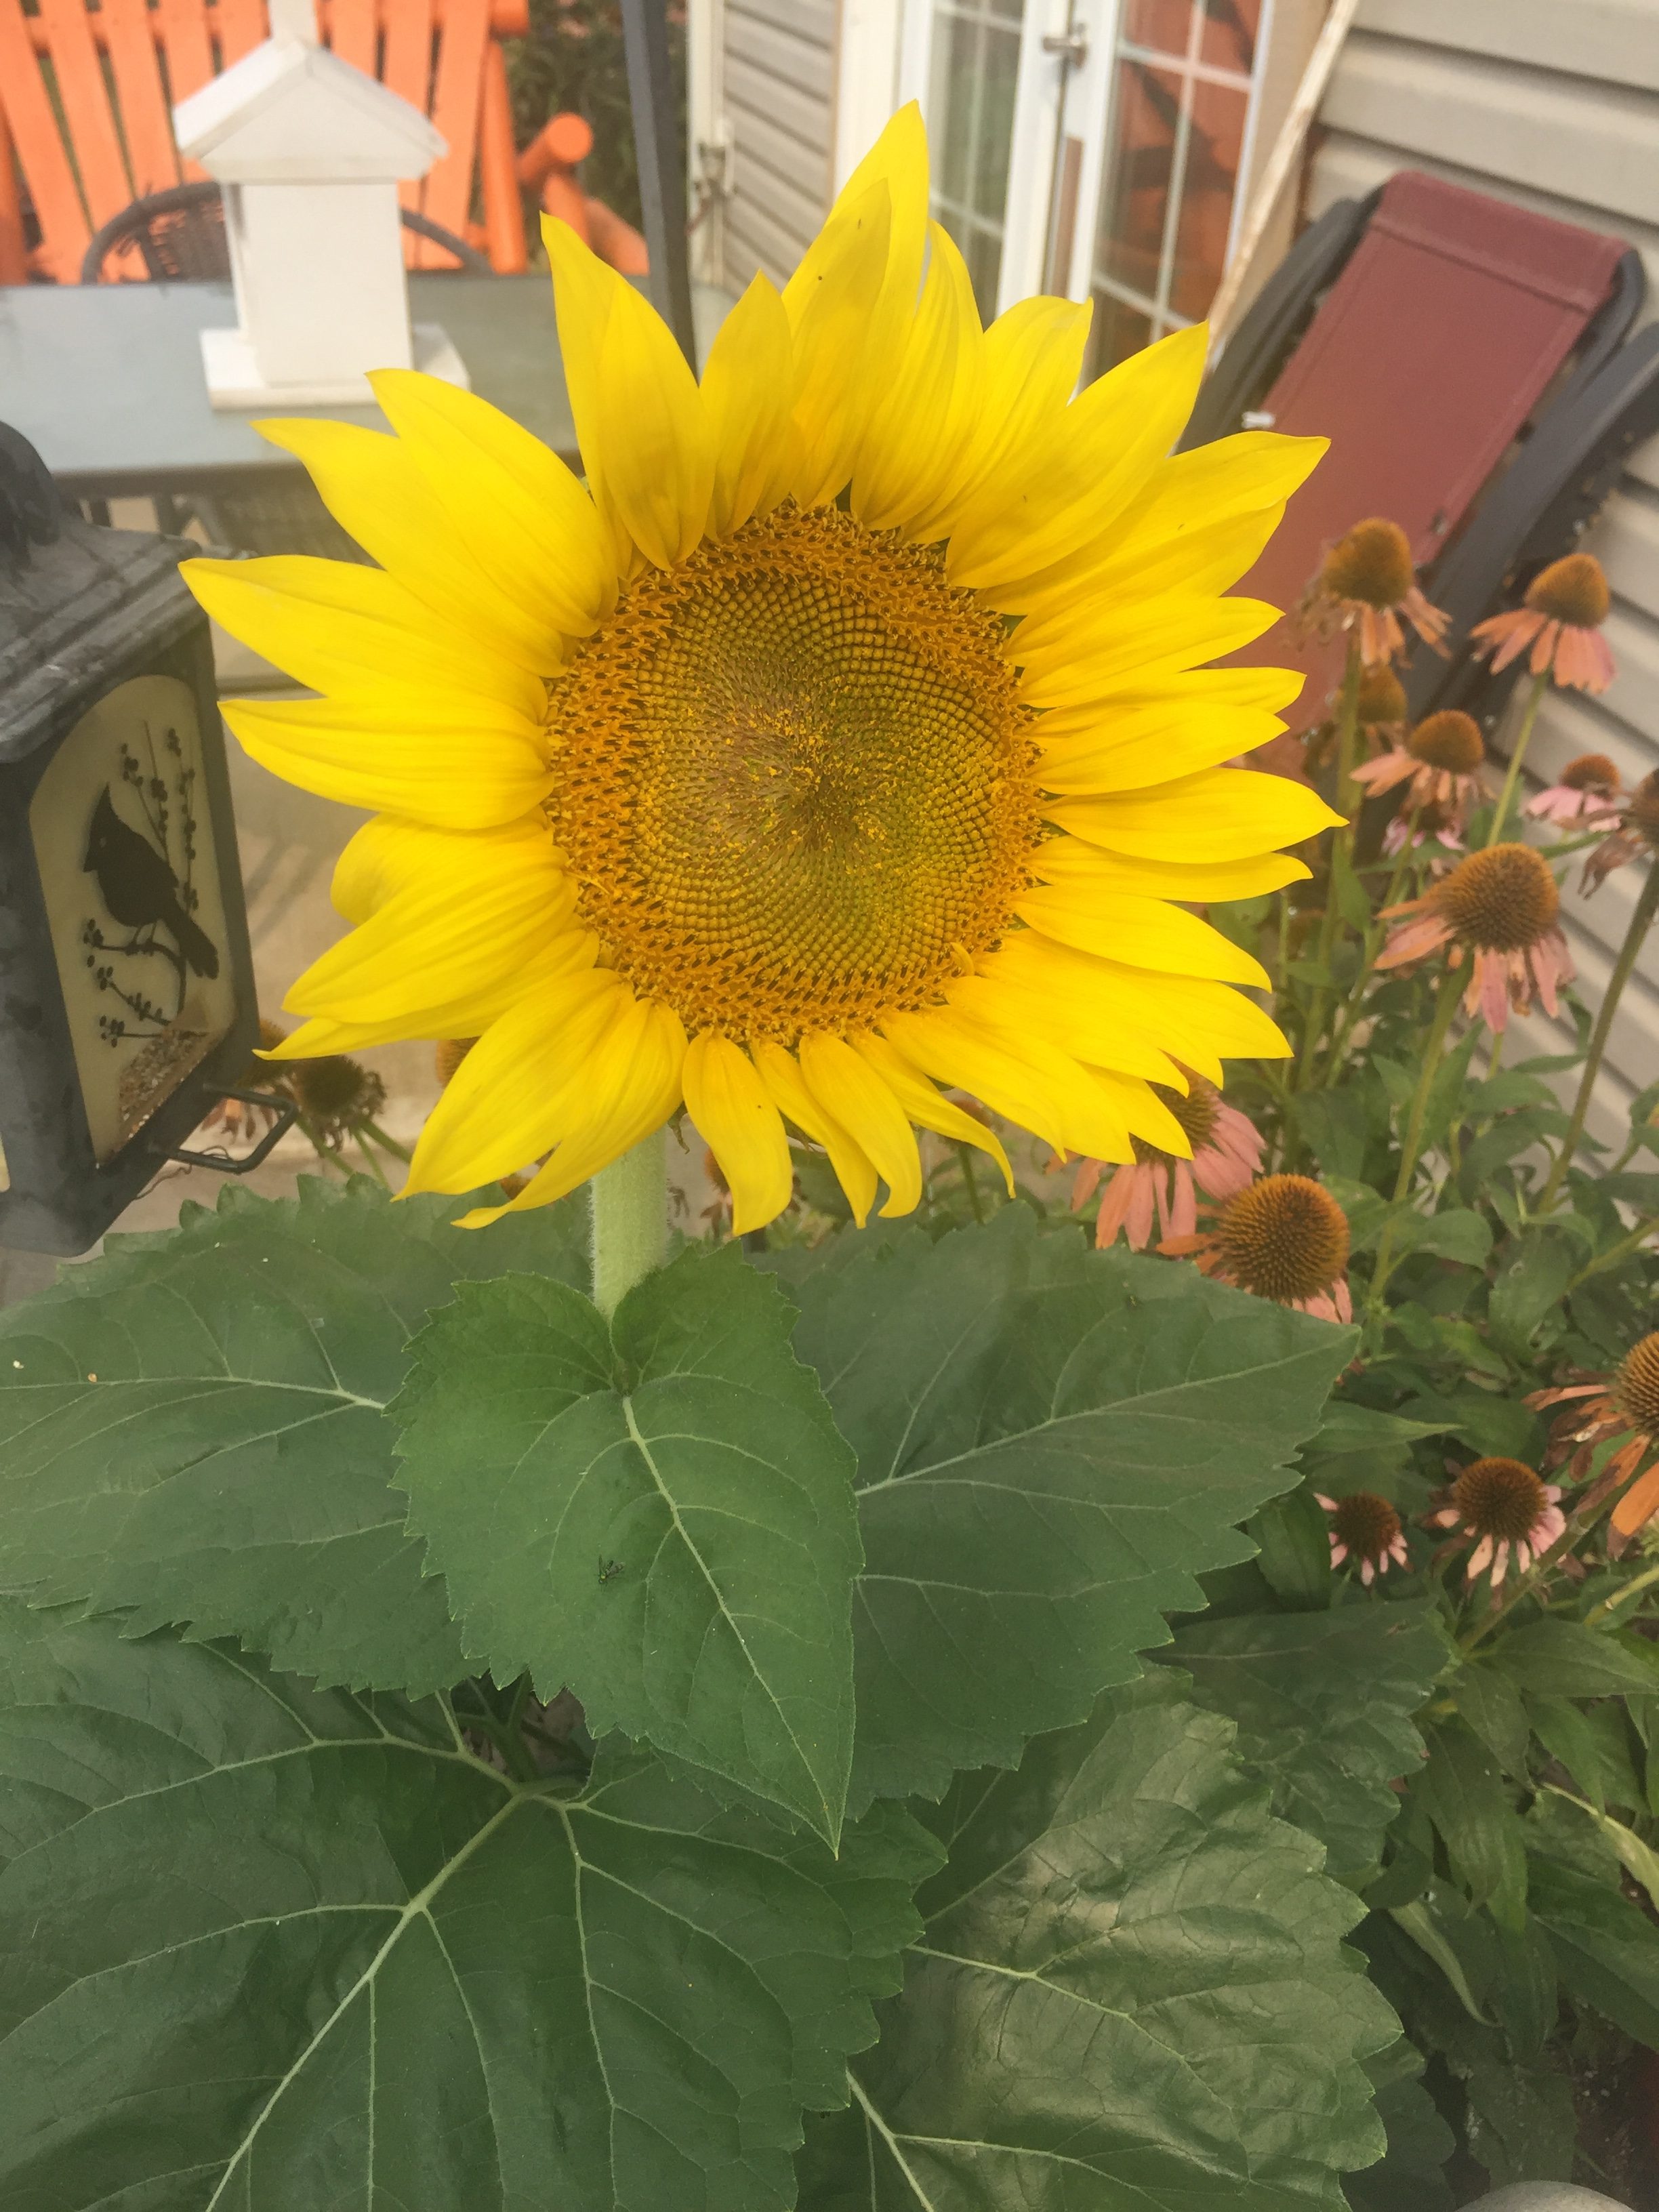 The Sunflower in My Garden